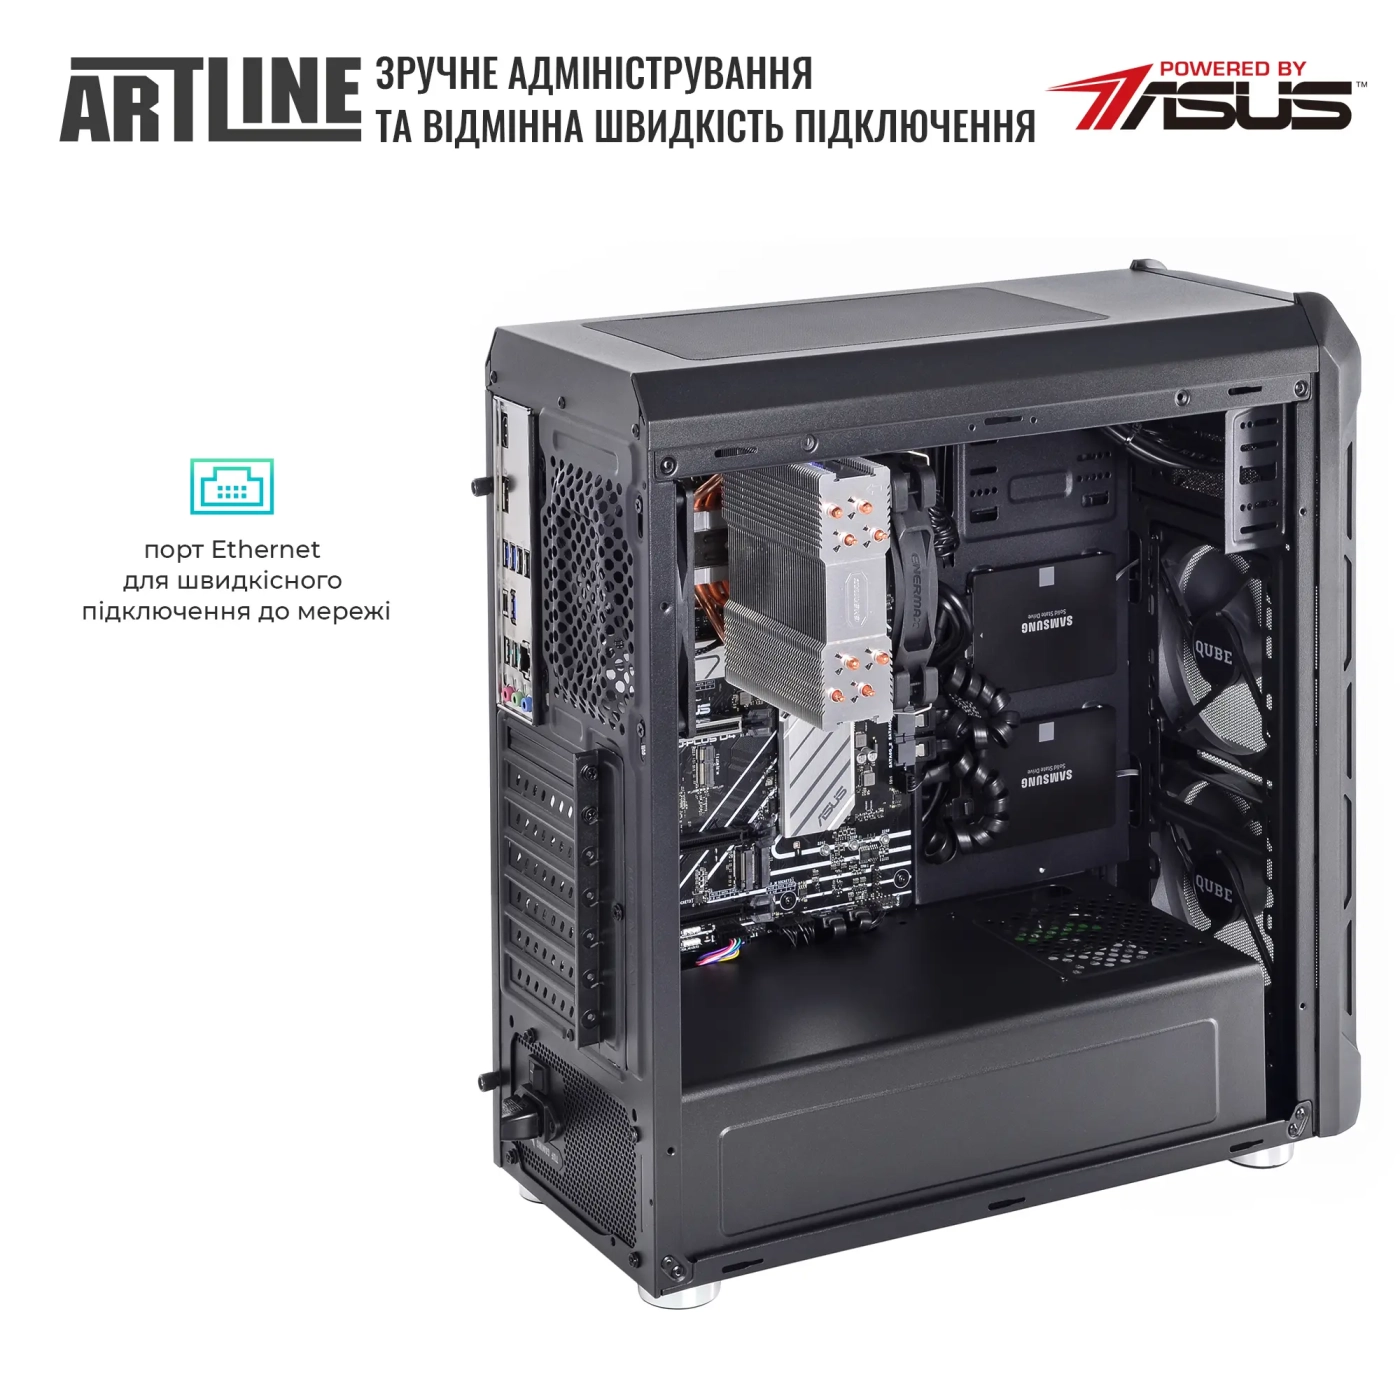 Купить Сервер ARTLINE Business T27 (T27v34) - фото 7